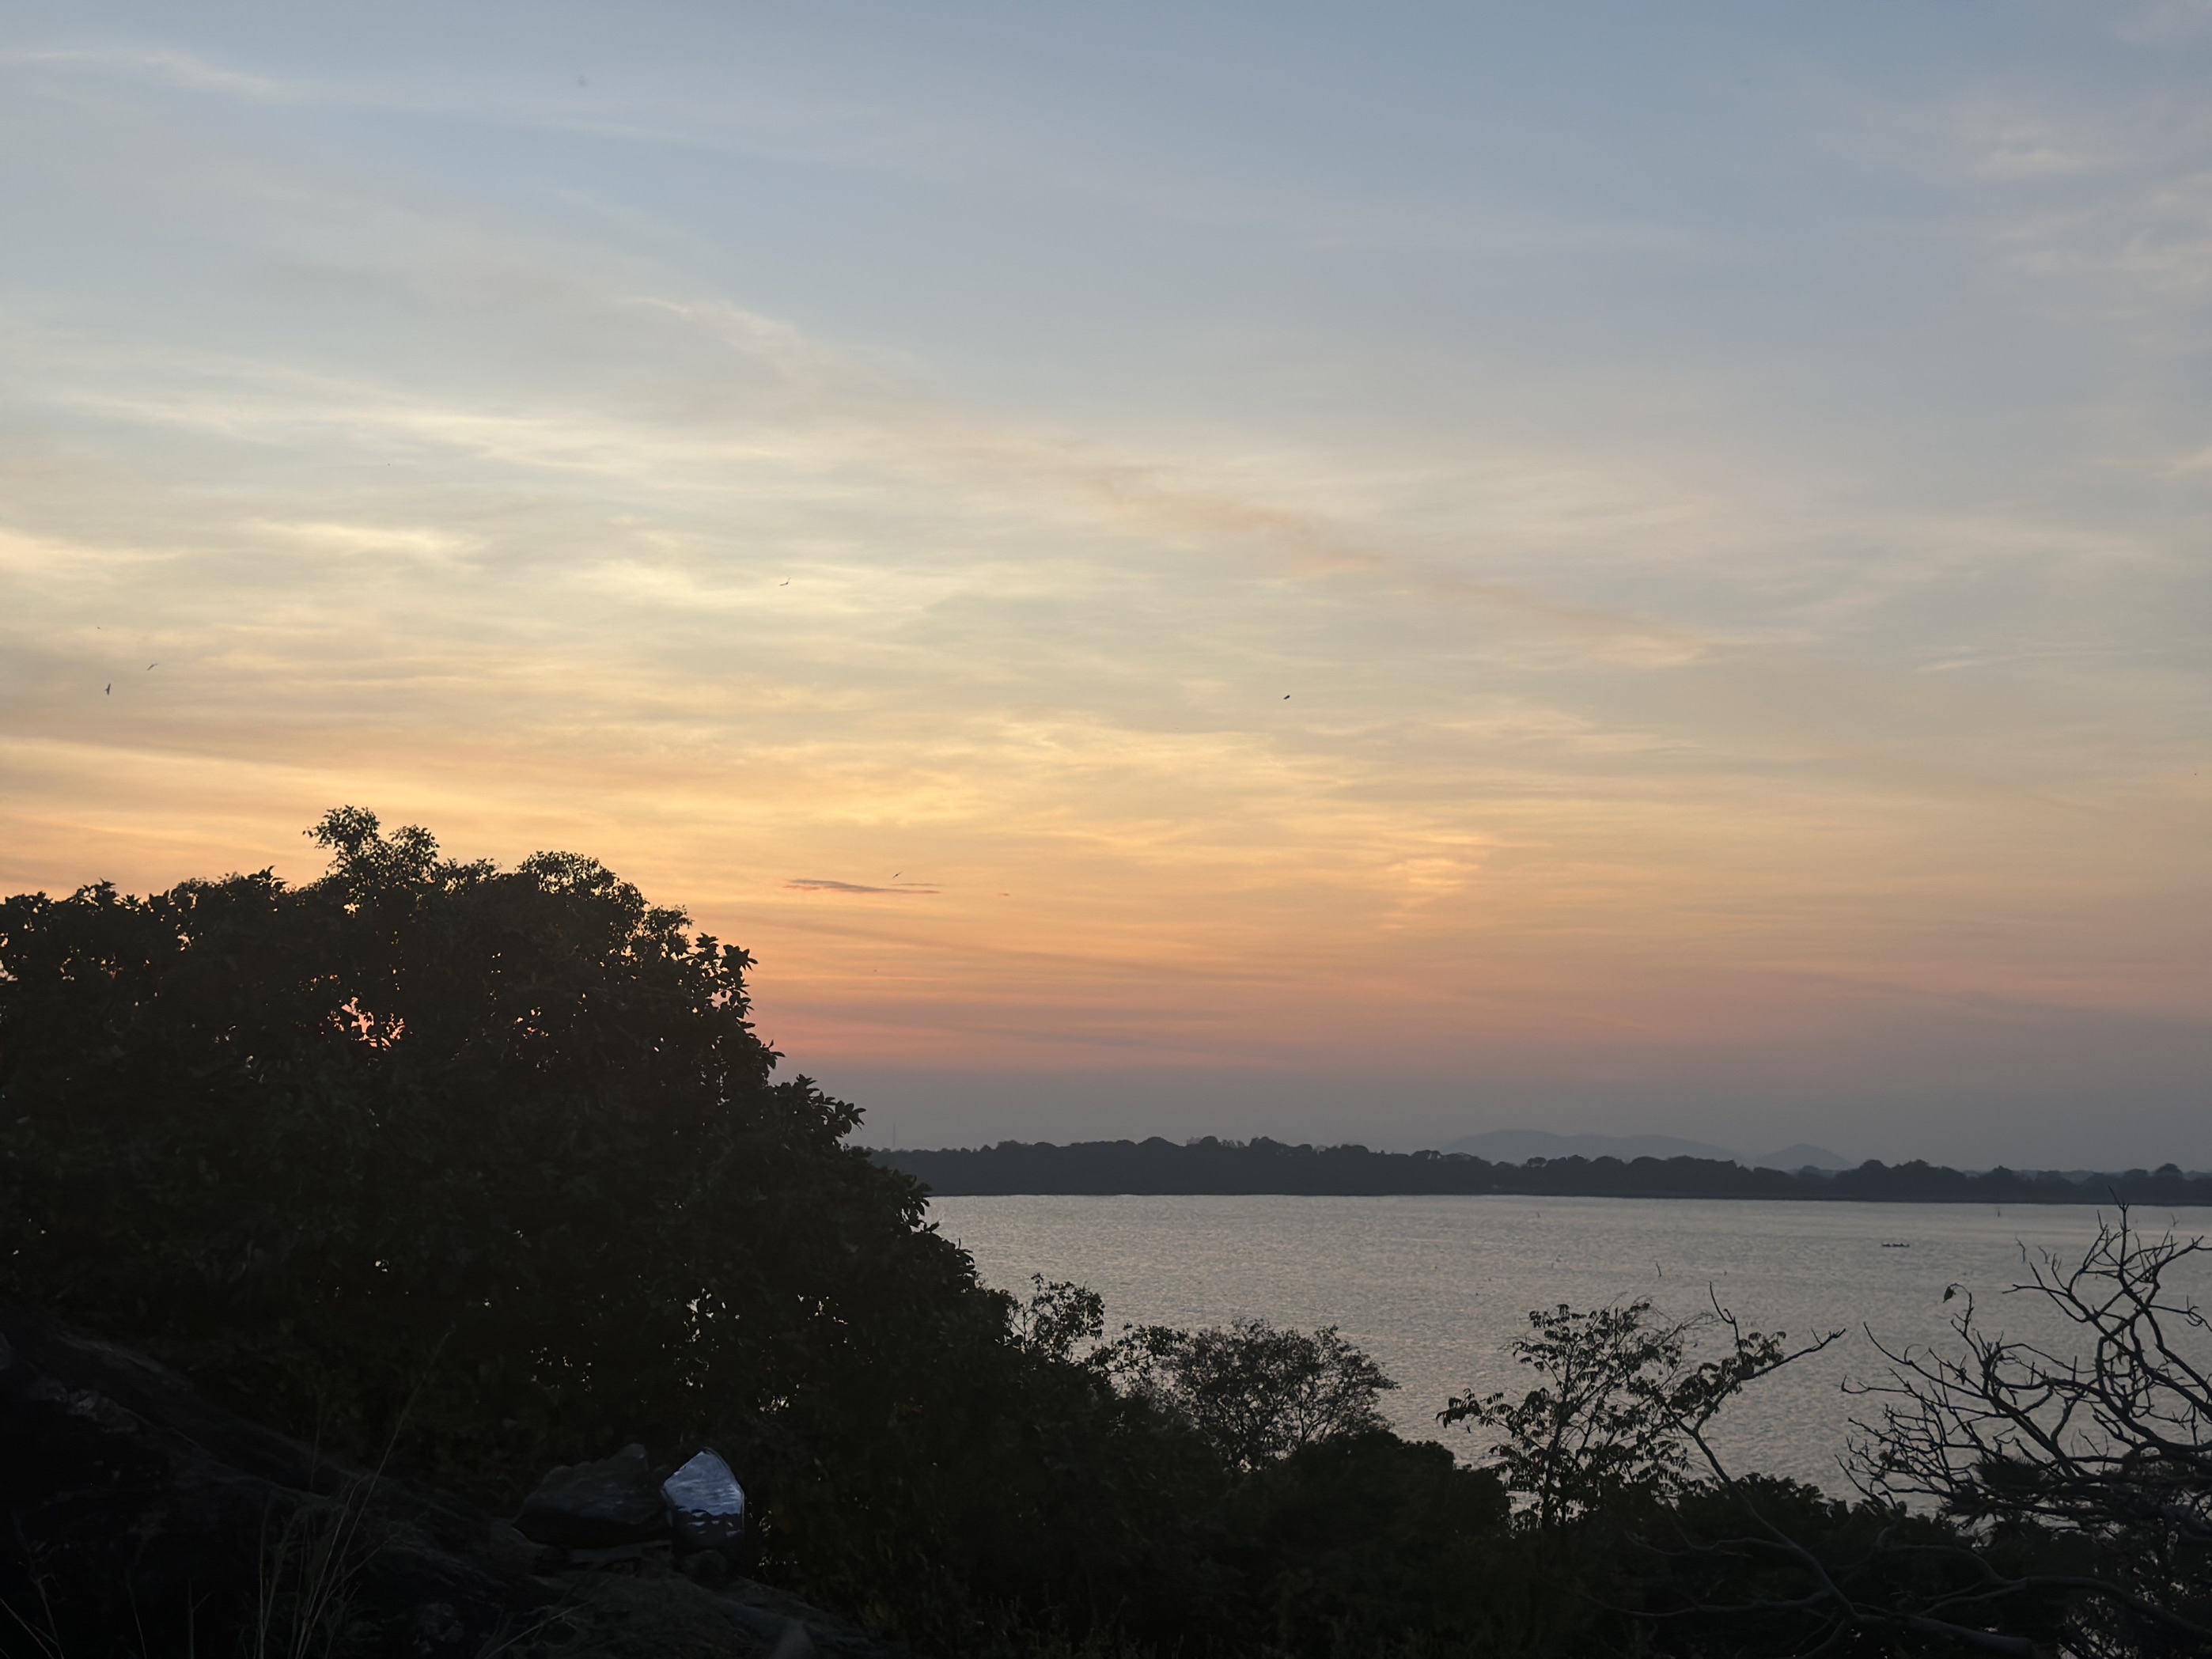 位置：Kandalama lake旁，风景很好，尤其是落日；距离狮子岩约40分钟车程，距离石窟寺约2